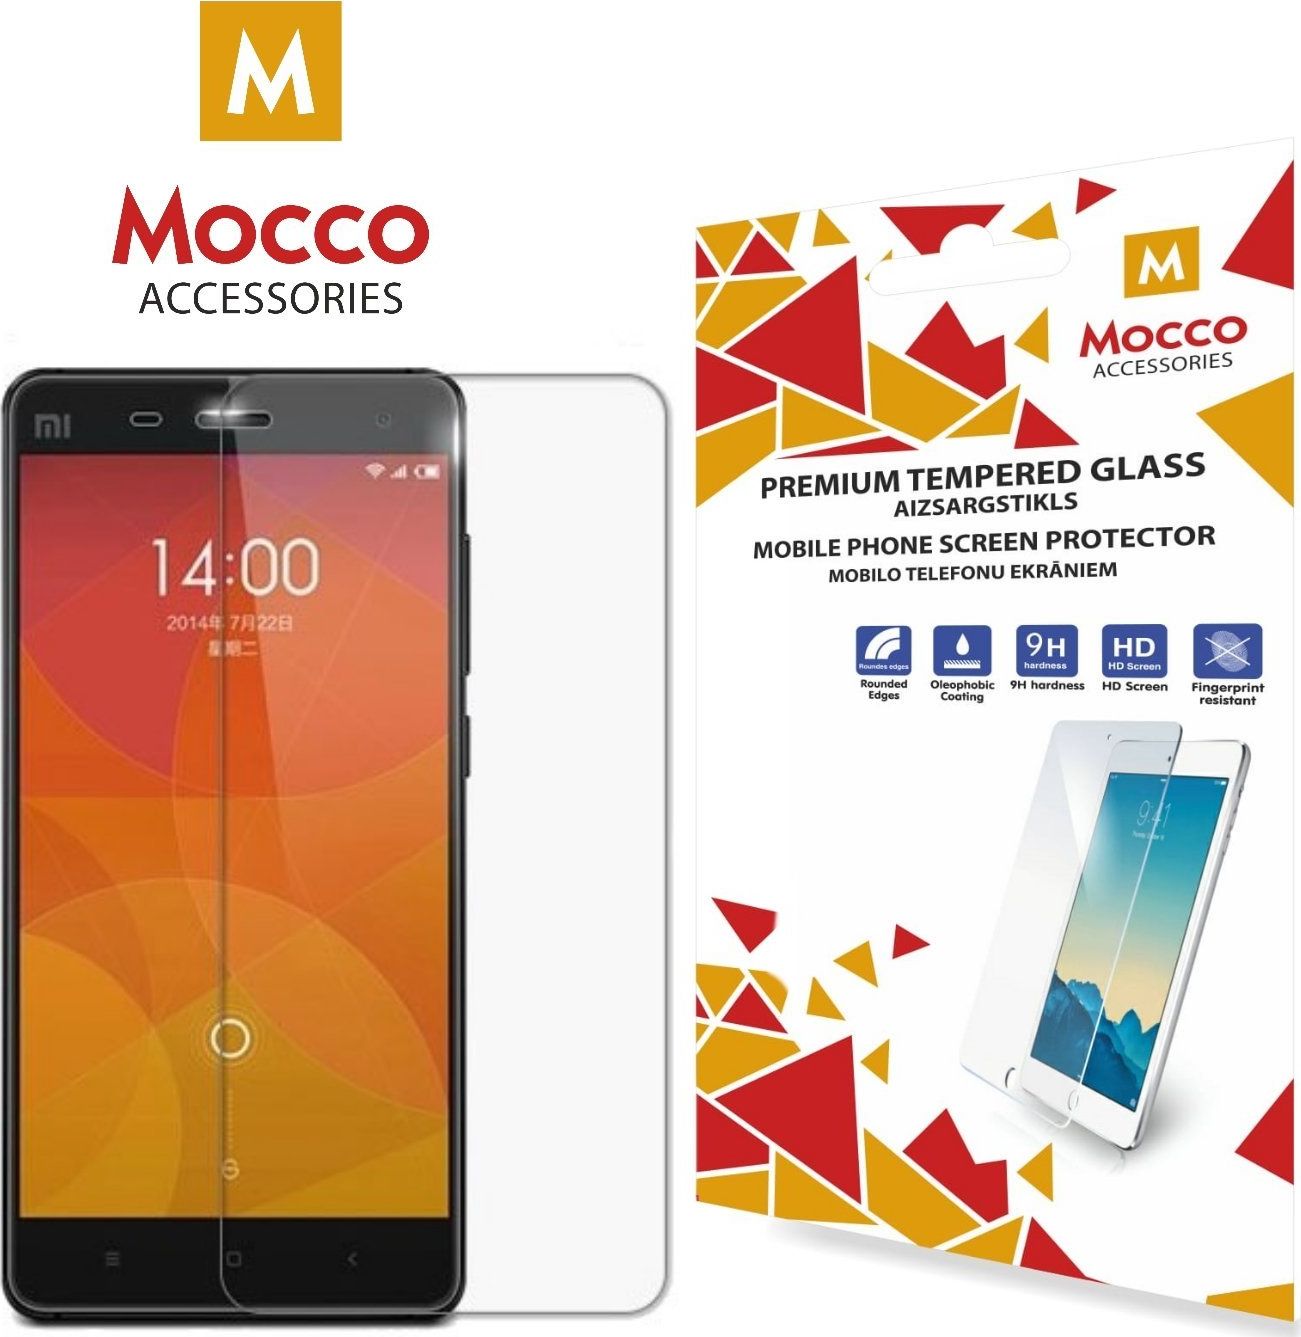 Mocco Tempered Glass Aizsargstikls Huawei Y5 / Y5 Prime (2018) aizsardzība ekrānam mobilajiem telefoniem